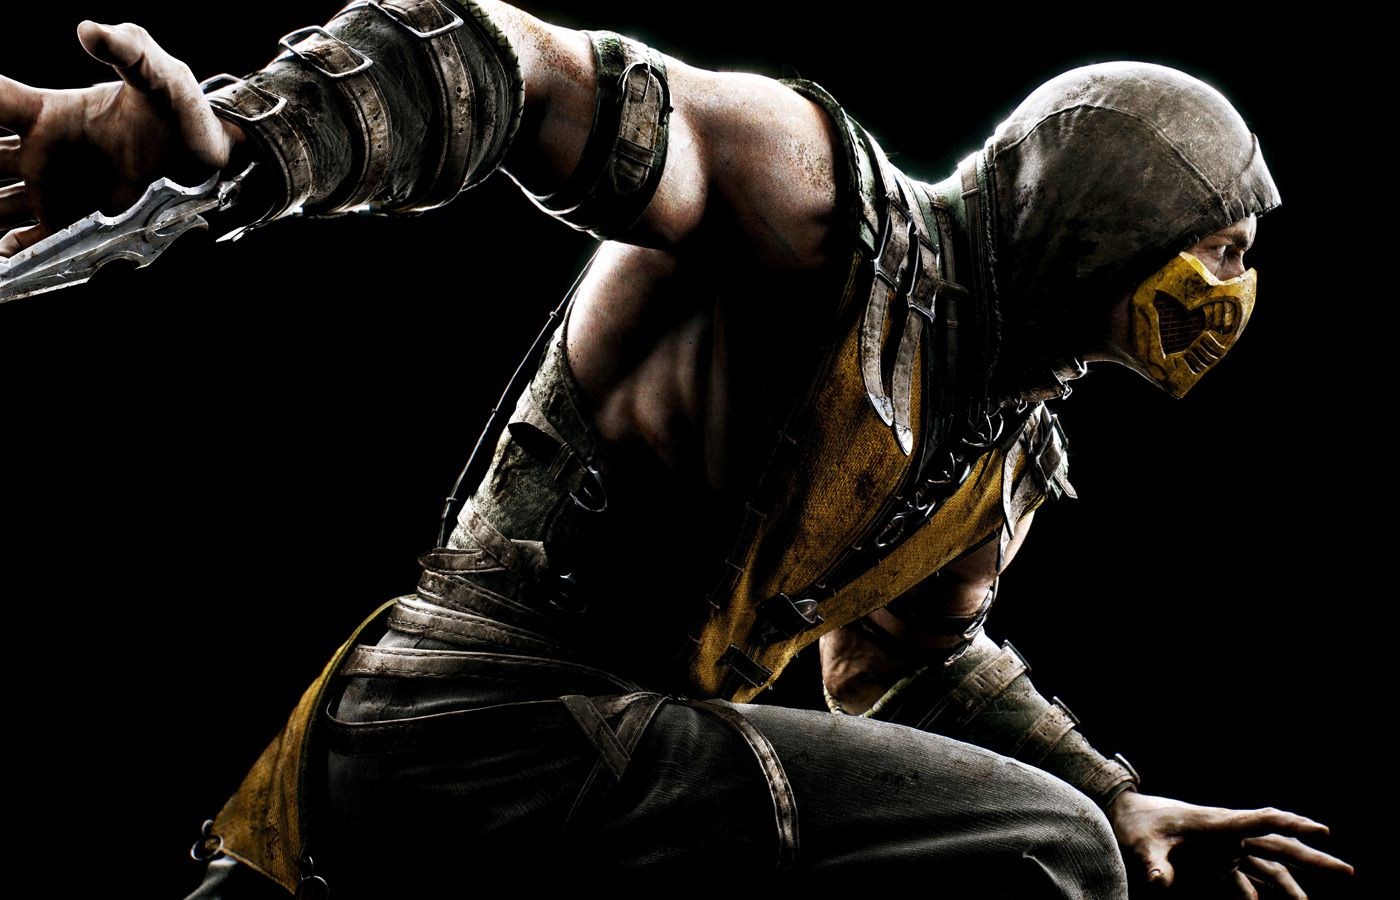 Mortal Kombat en iyi karakter Scorpion